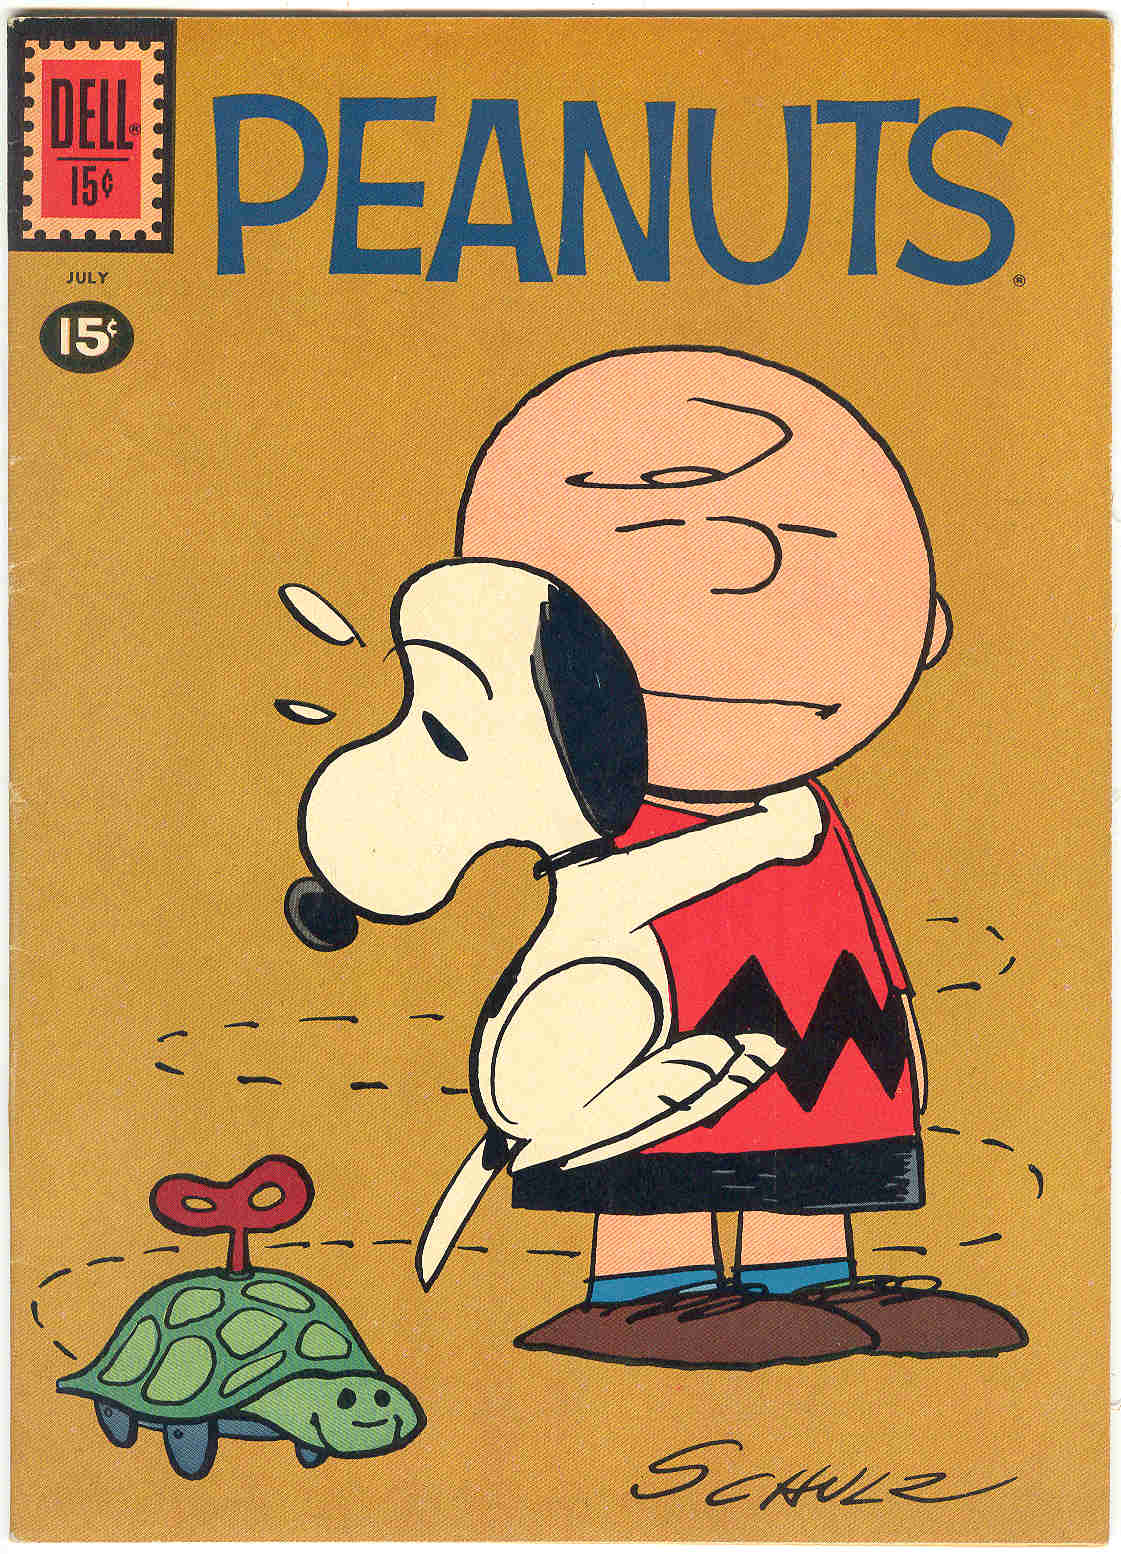 Timely-Atlas-Comics: OT : Peanuts - A Comic Book History